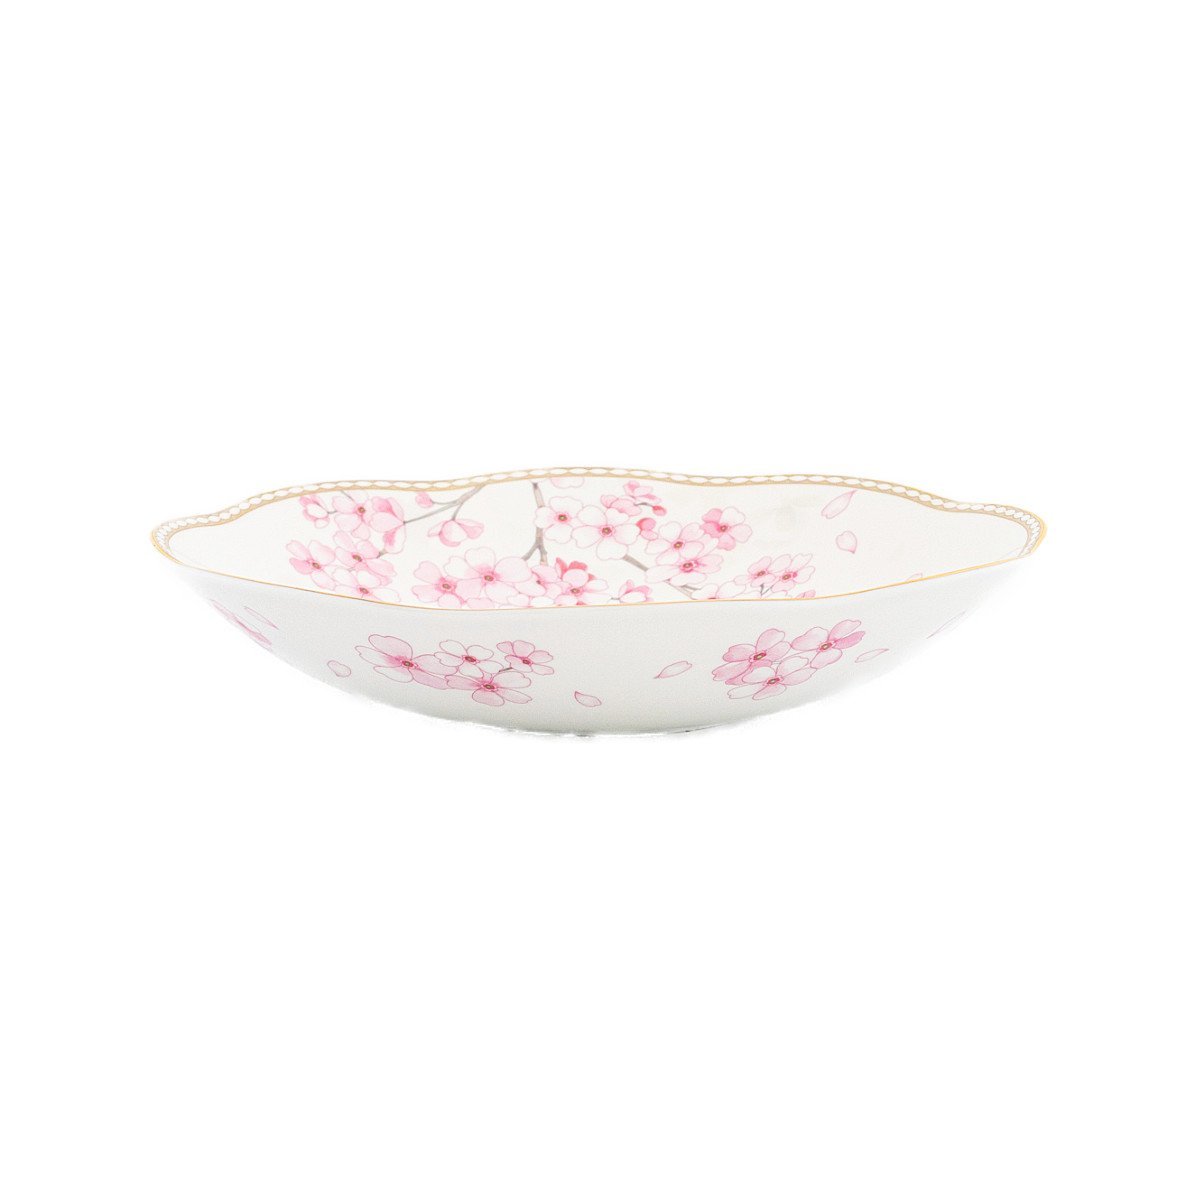 ウェッジウッド スプリングブロッサム ボウル 23cm ピンク 食器 深皿 